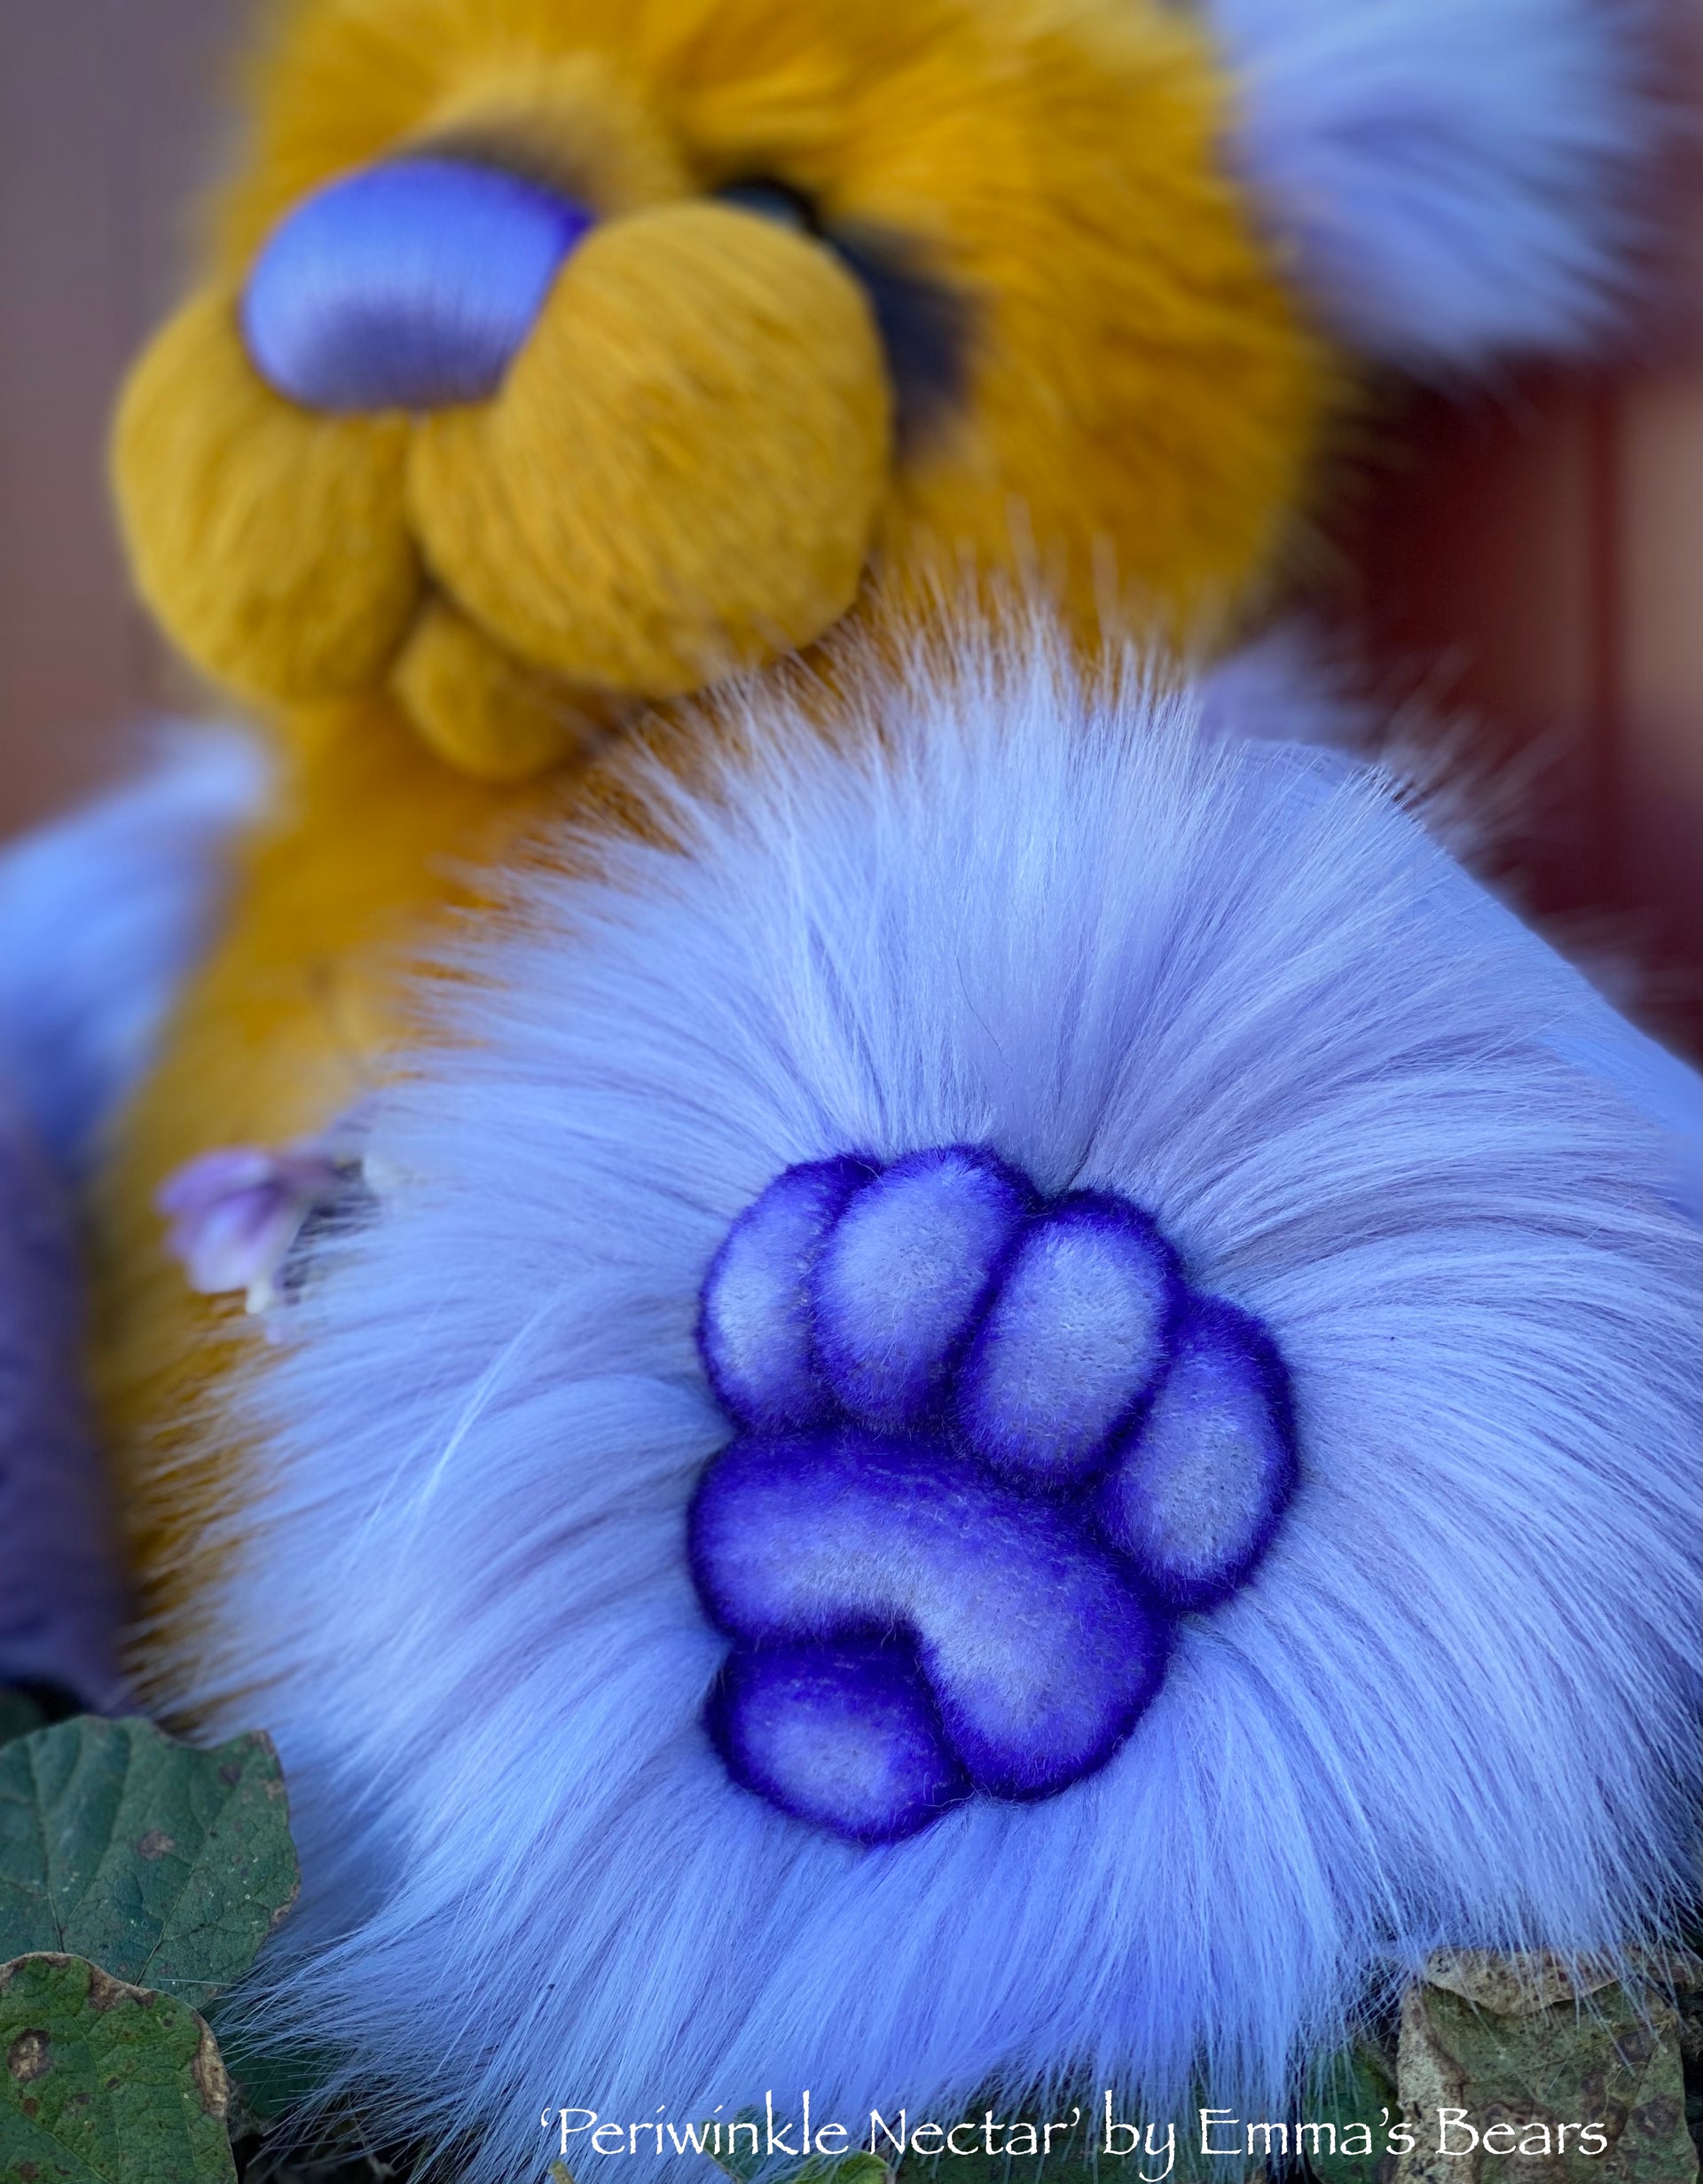 Periwinkle Nectar - 16" faux fur Artist Bear by Emma's Bears - OOAK